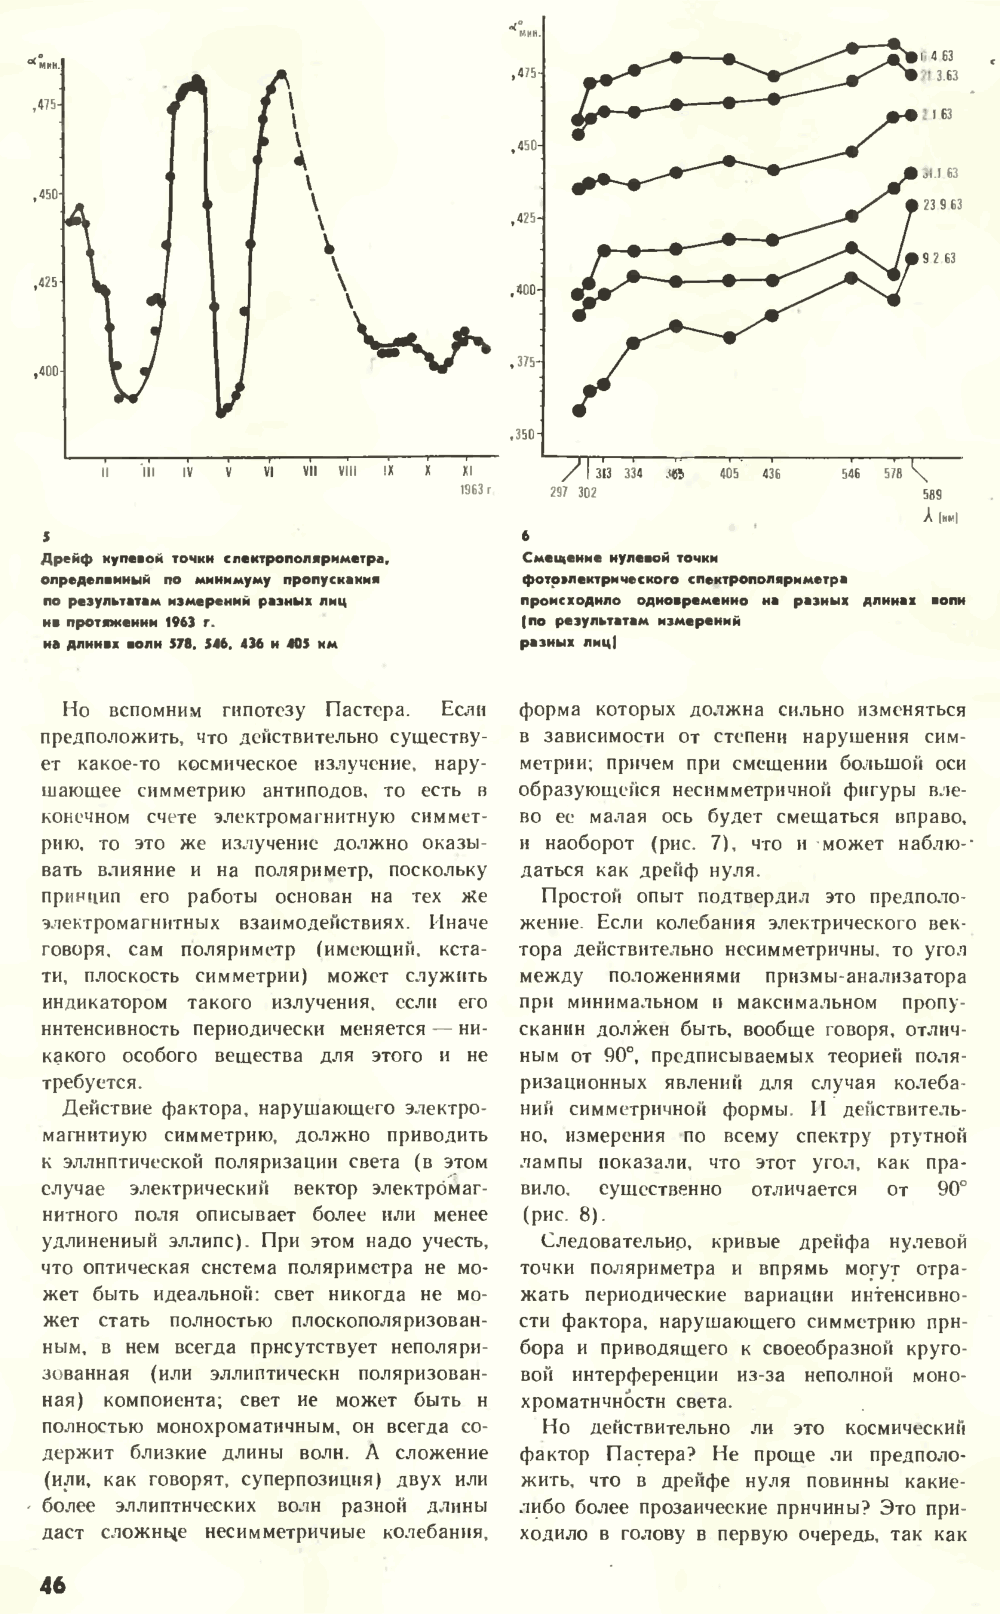 Что нарушает симметрию? В.Е. Жвирблис. Химия и жизнь, 1977, №12, с.42-49. Фотокопия №5